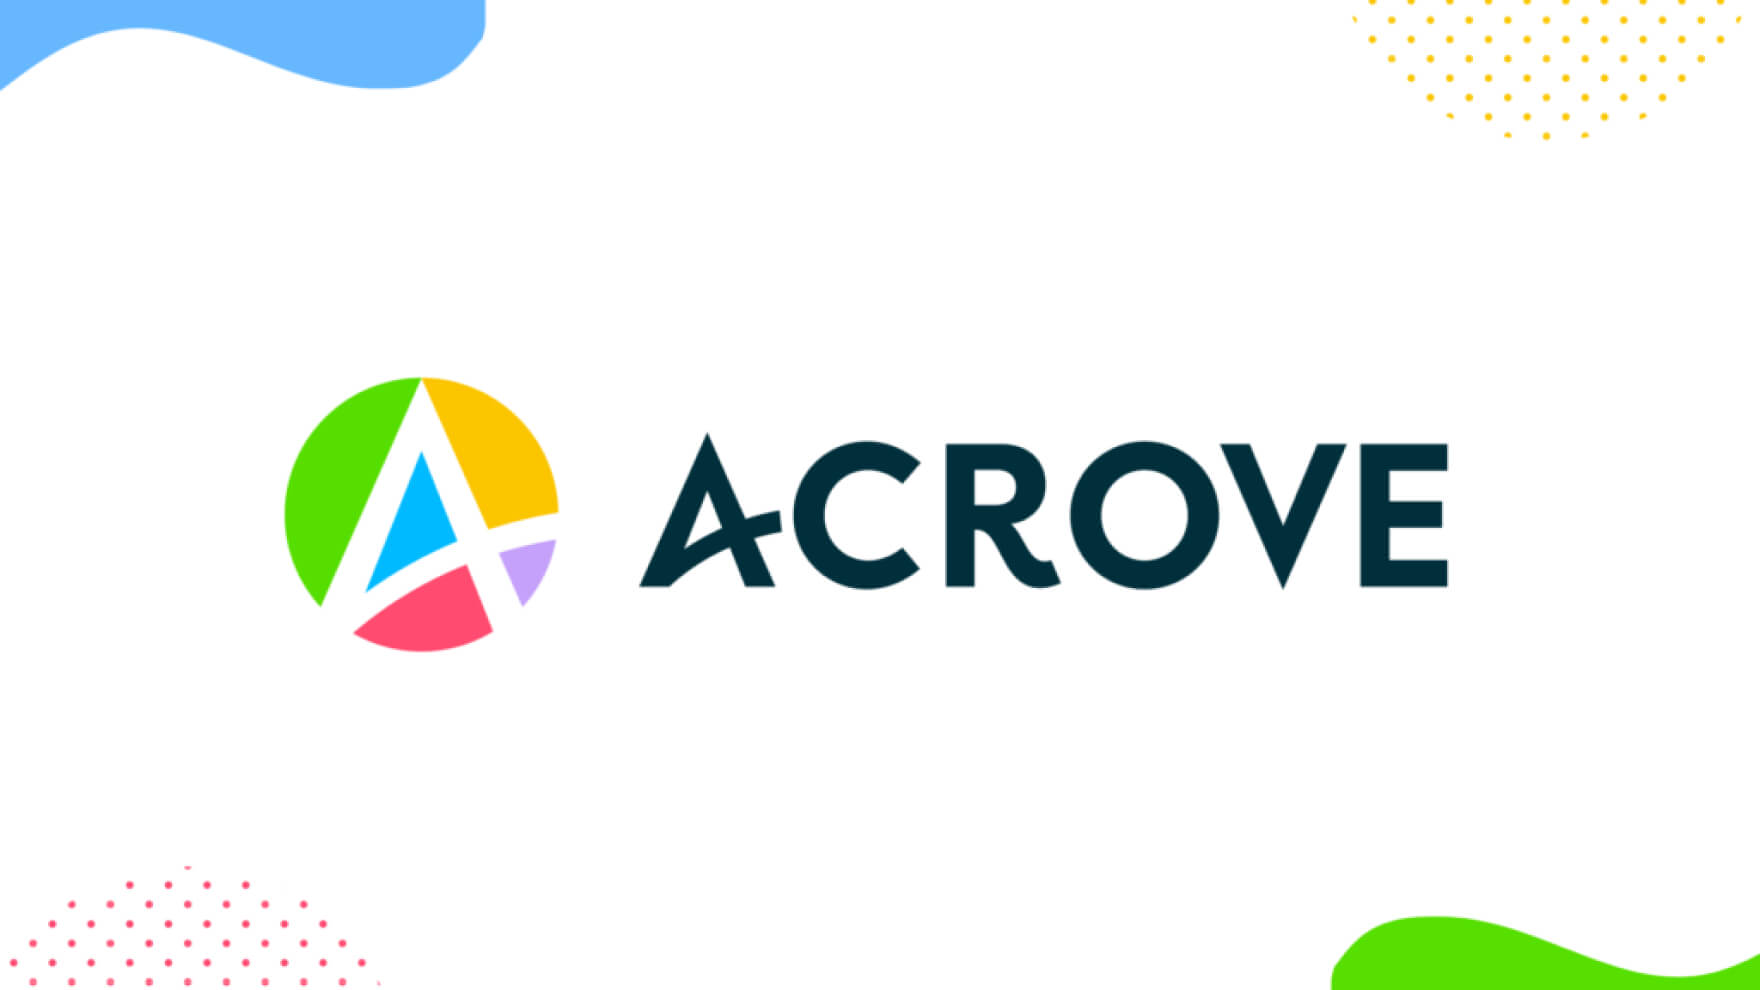 株式会社ACROVE、Amazon Ads パートナーネットワーク「ベリファイドパートナー」に認定されました